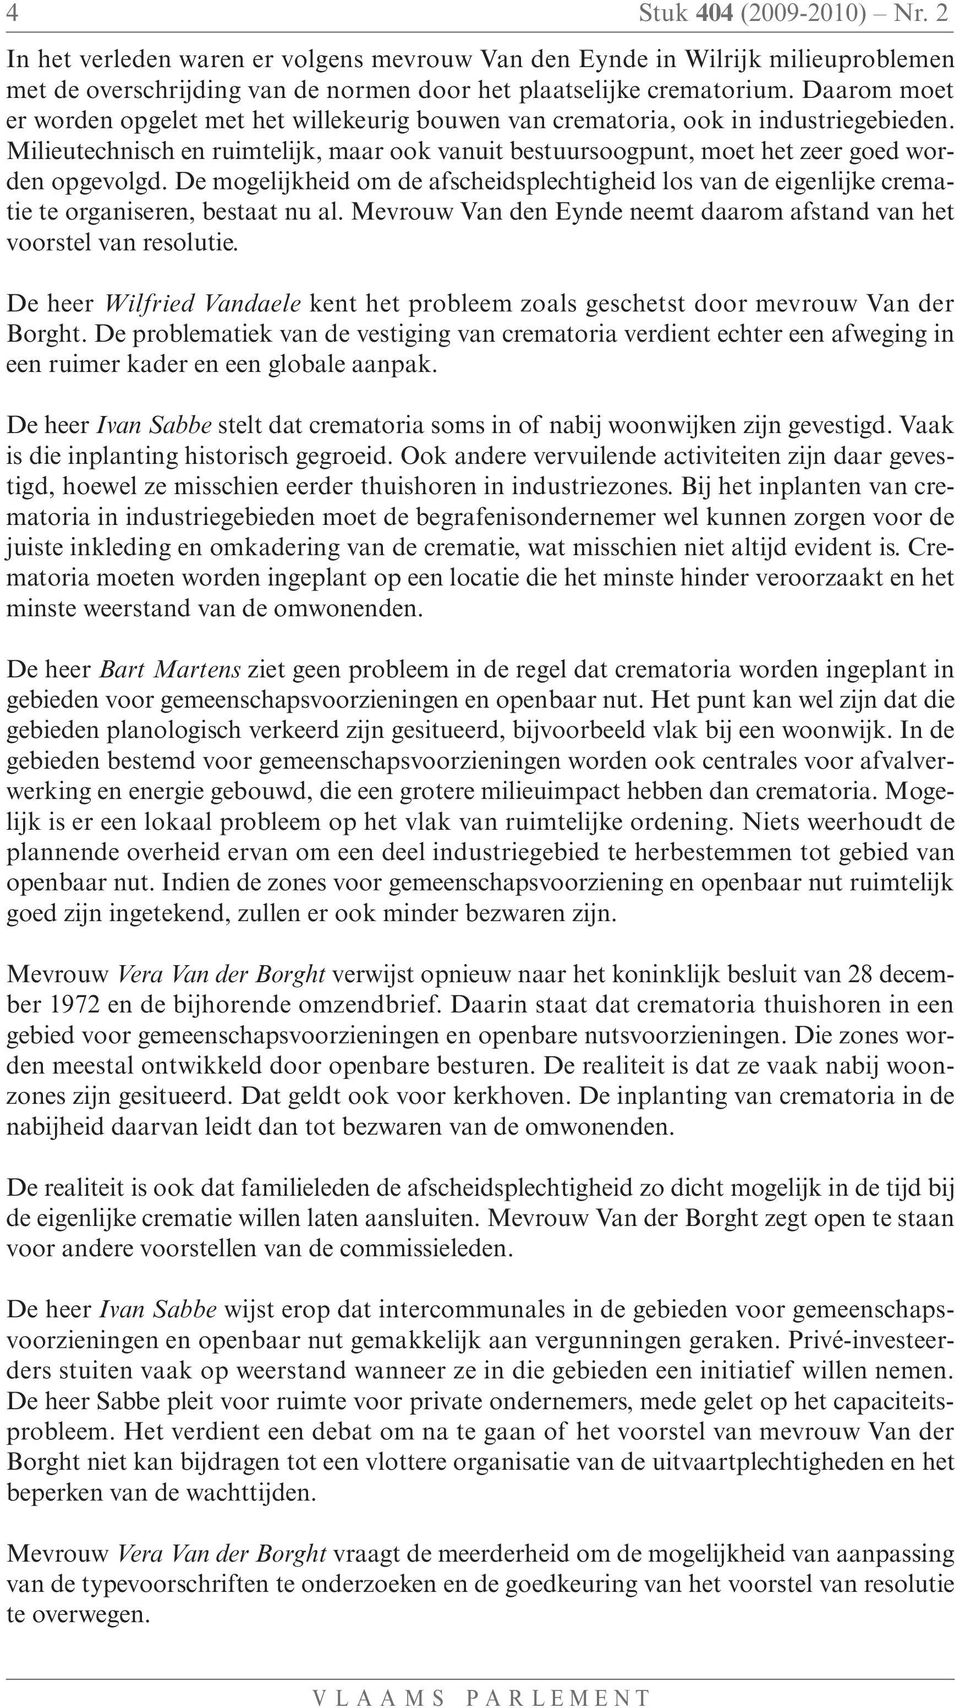 De mogelijkheid om de afscheidsplechtigheid los van de eigenlijke crematie te organiseren, bestaat nu al. Mevrouw Van den Eynde neemt daarom afstand van het voorstel van resolutie.